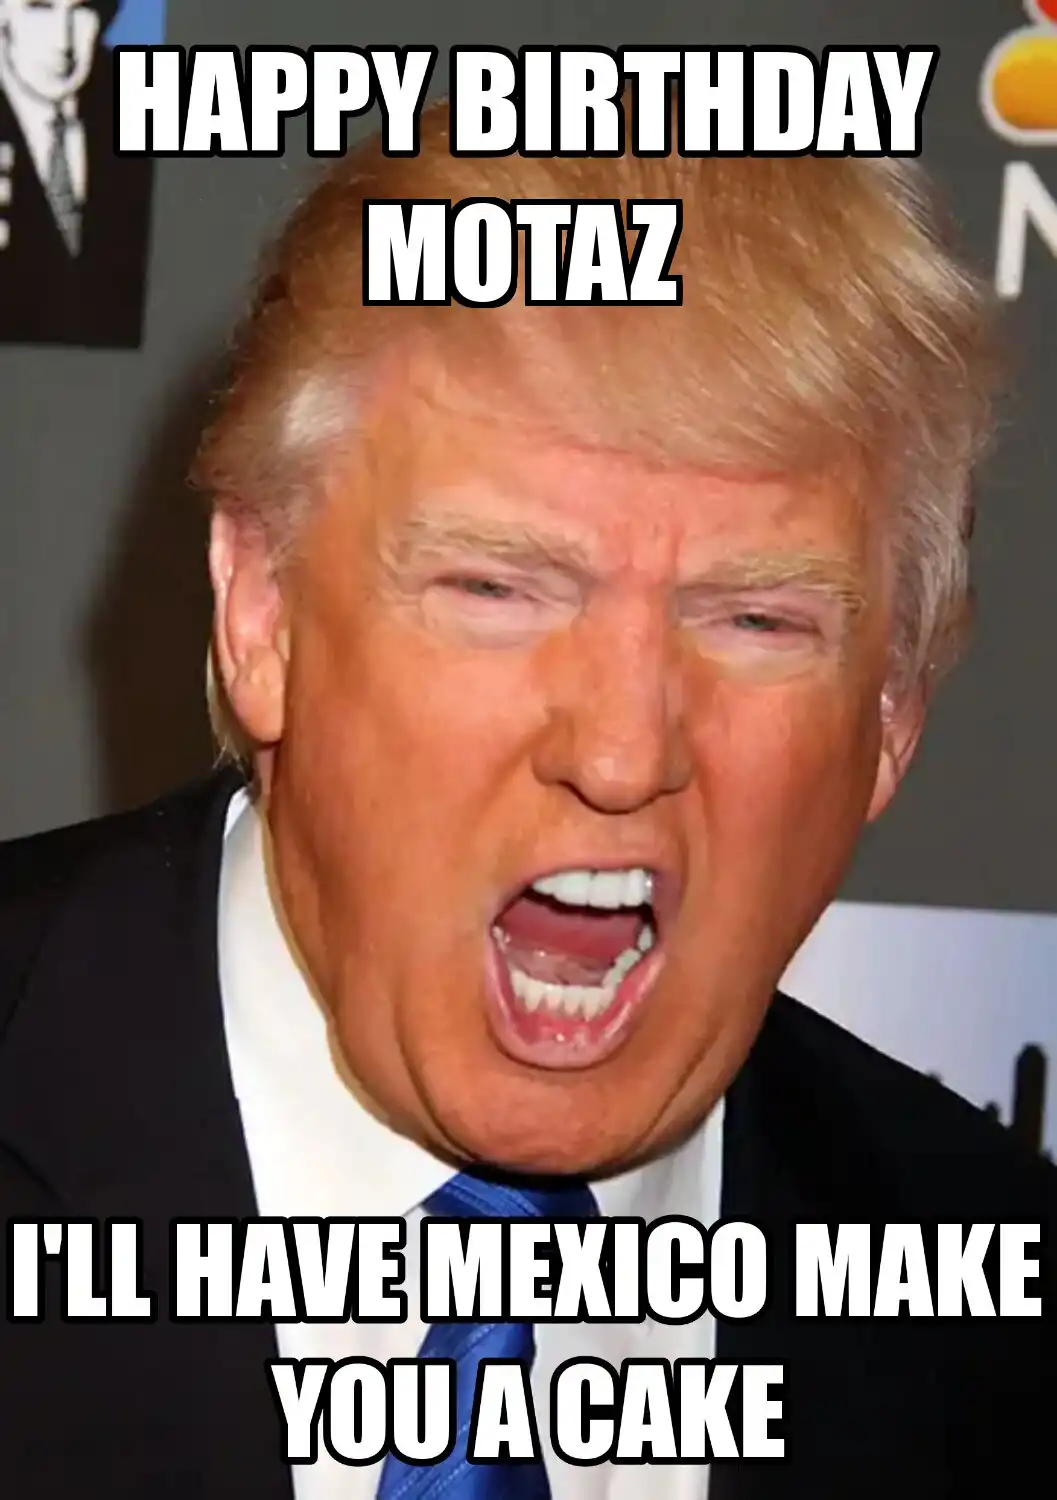 Happy Birthday Motaz Mexico Make You A Cake Meme